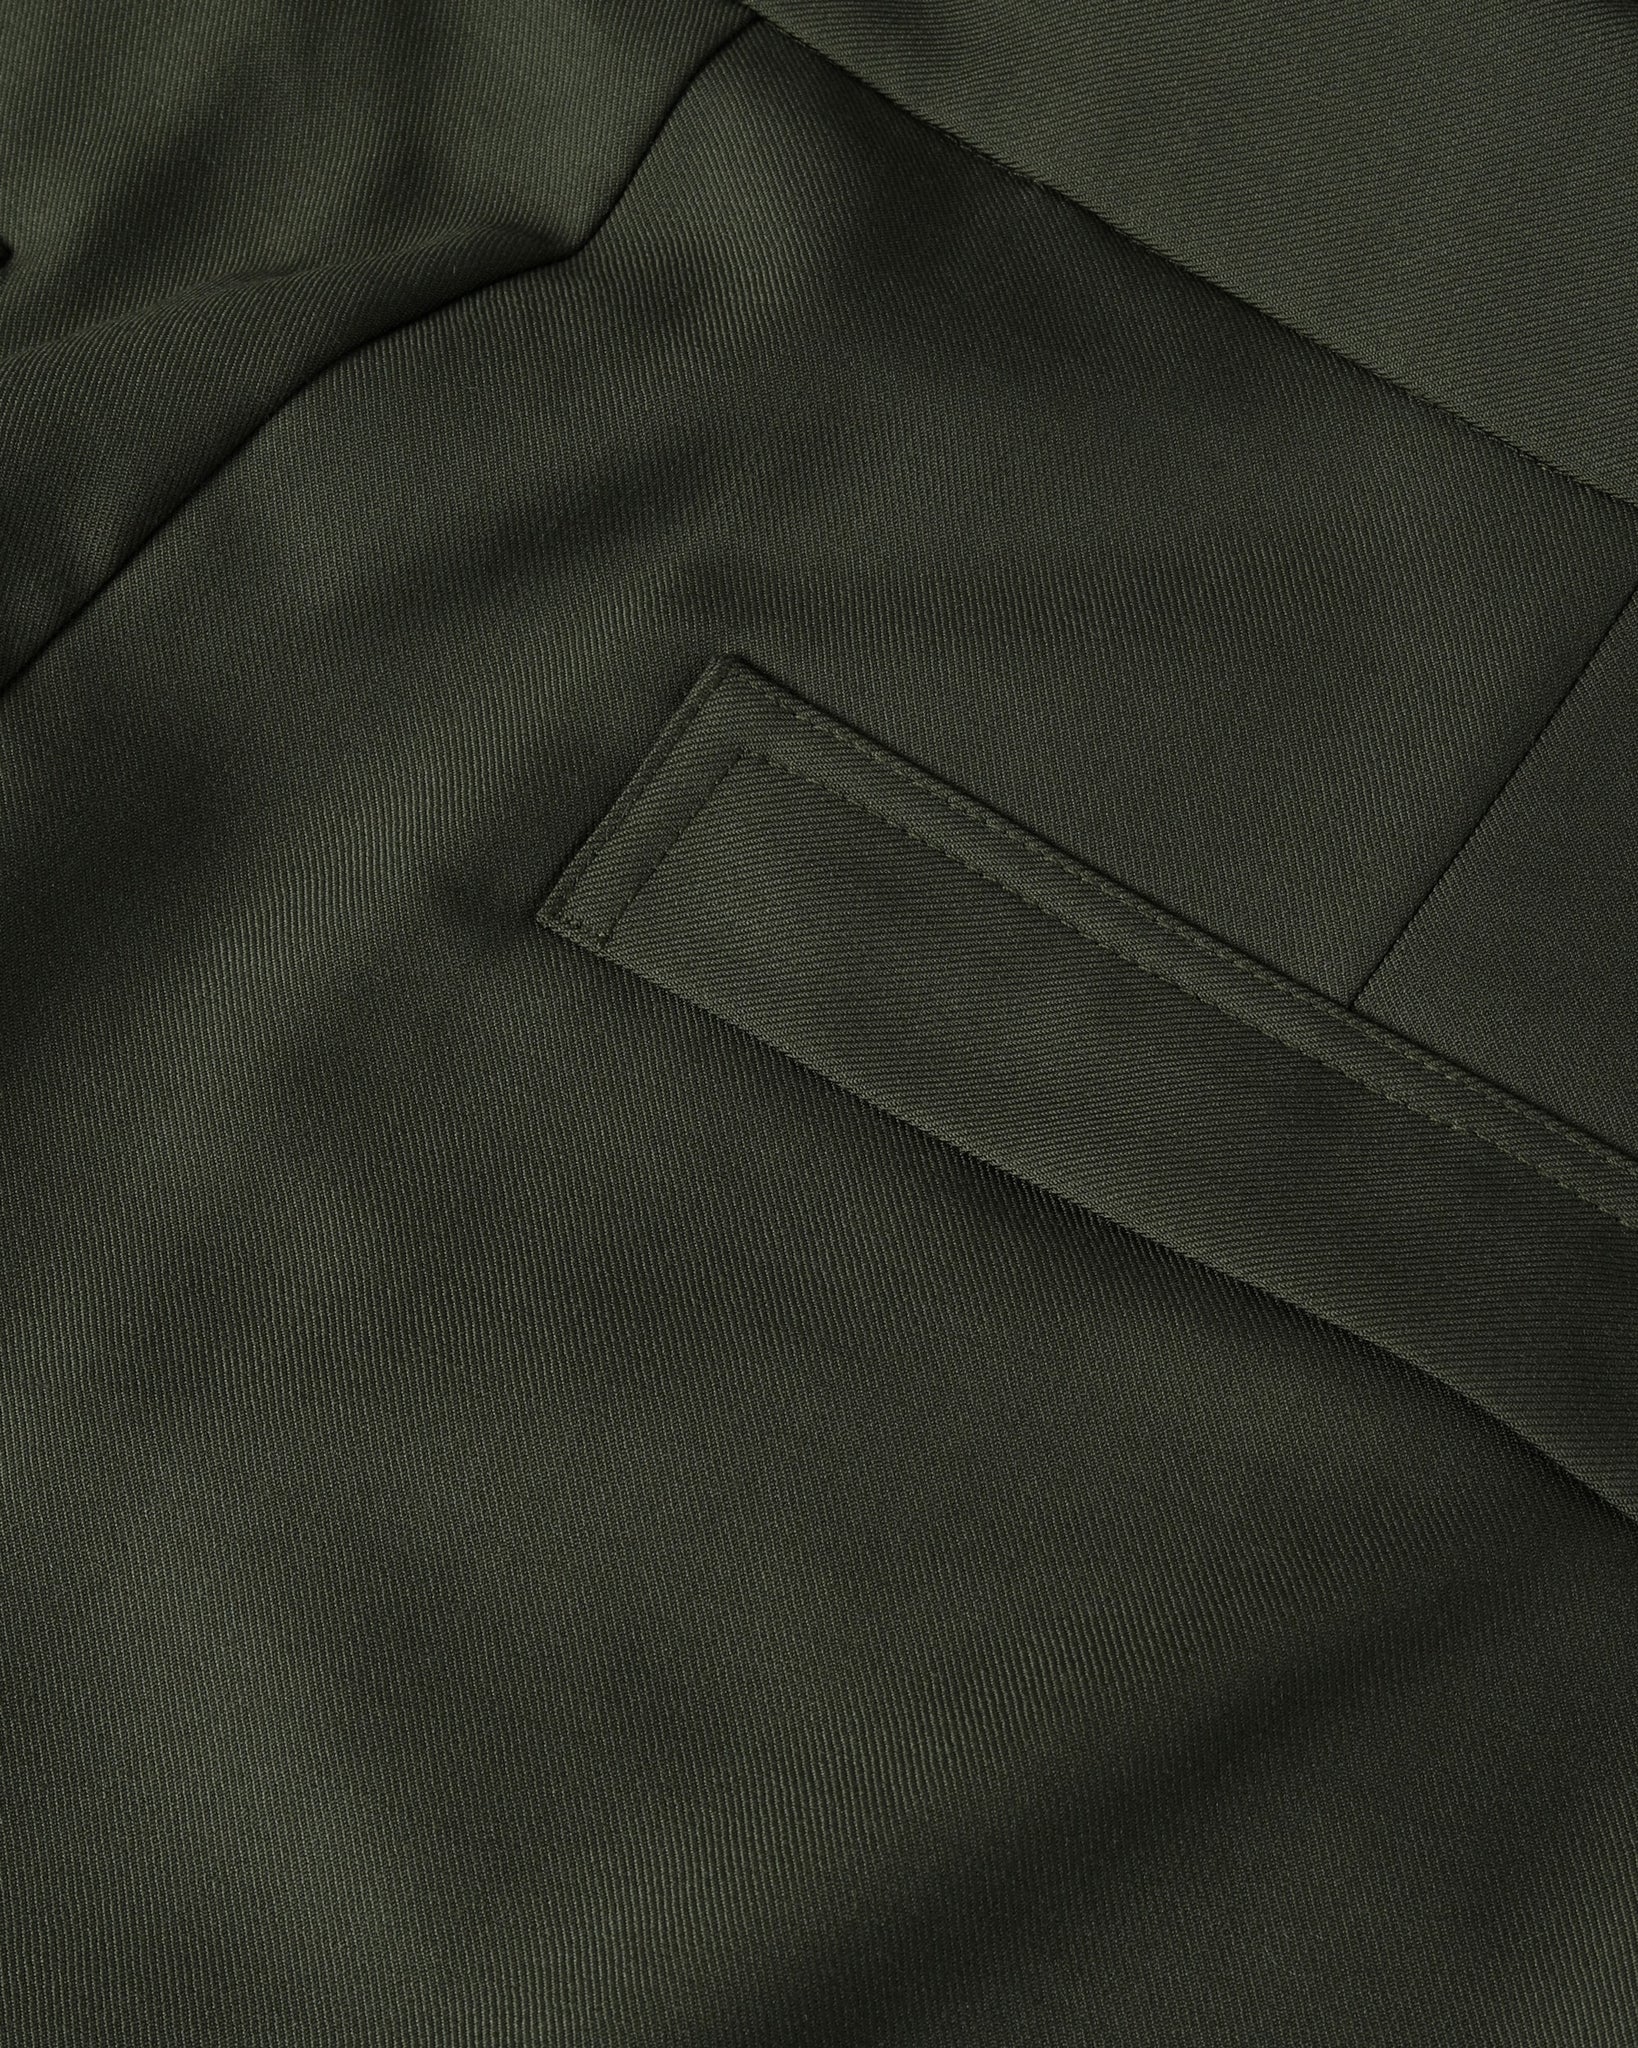 ROSEN Gyatso Trousers in Merino Wool Sz 3-4